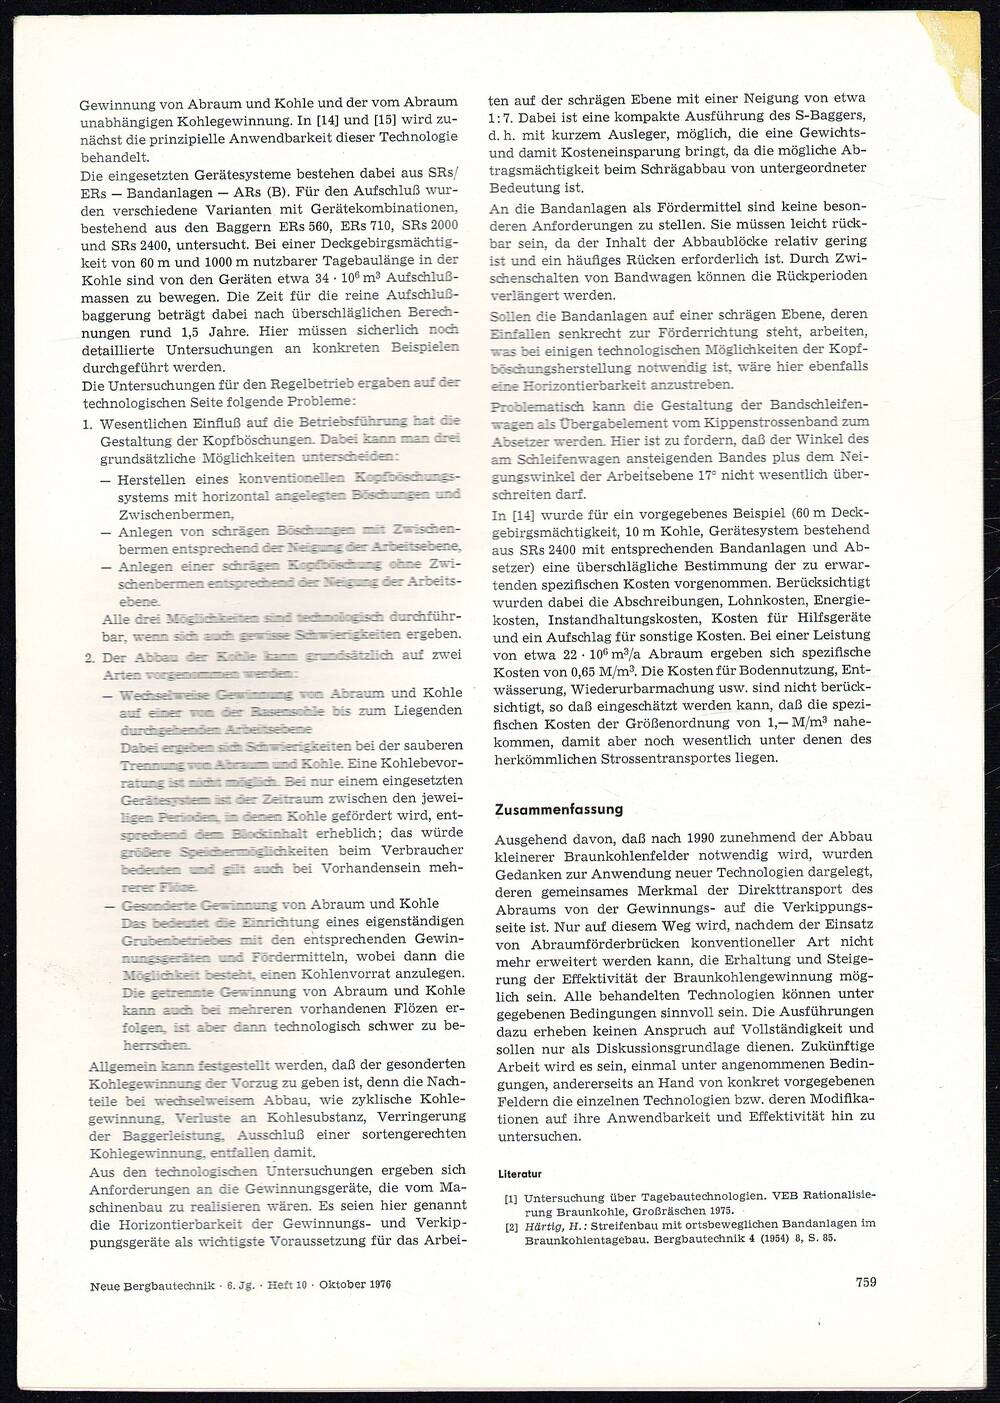 Оттиск отдельный статьи. Мельников Н.В. «Prinzipien der technologischen…». Журнал «Новая горная техника» ГДР, октябрь 1976 г.